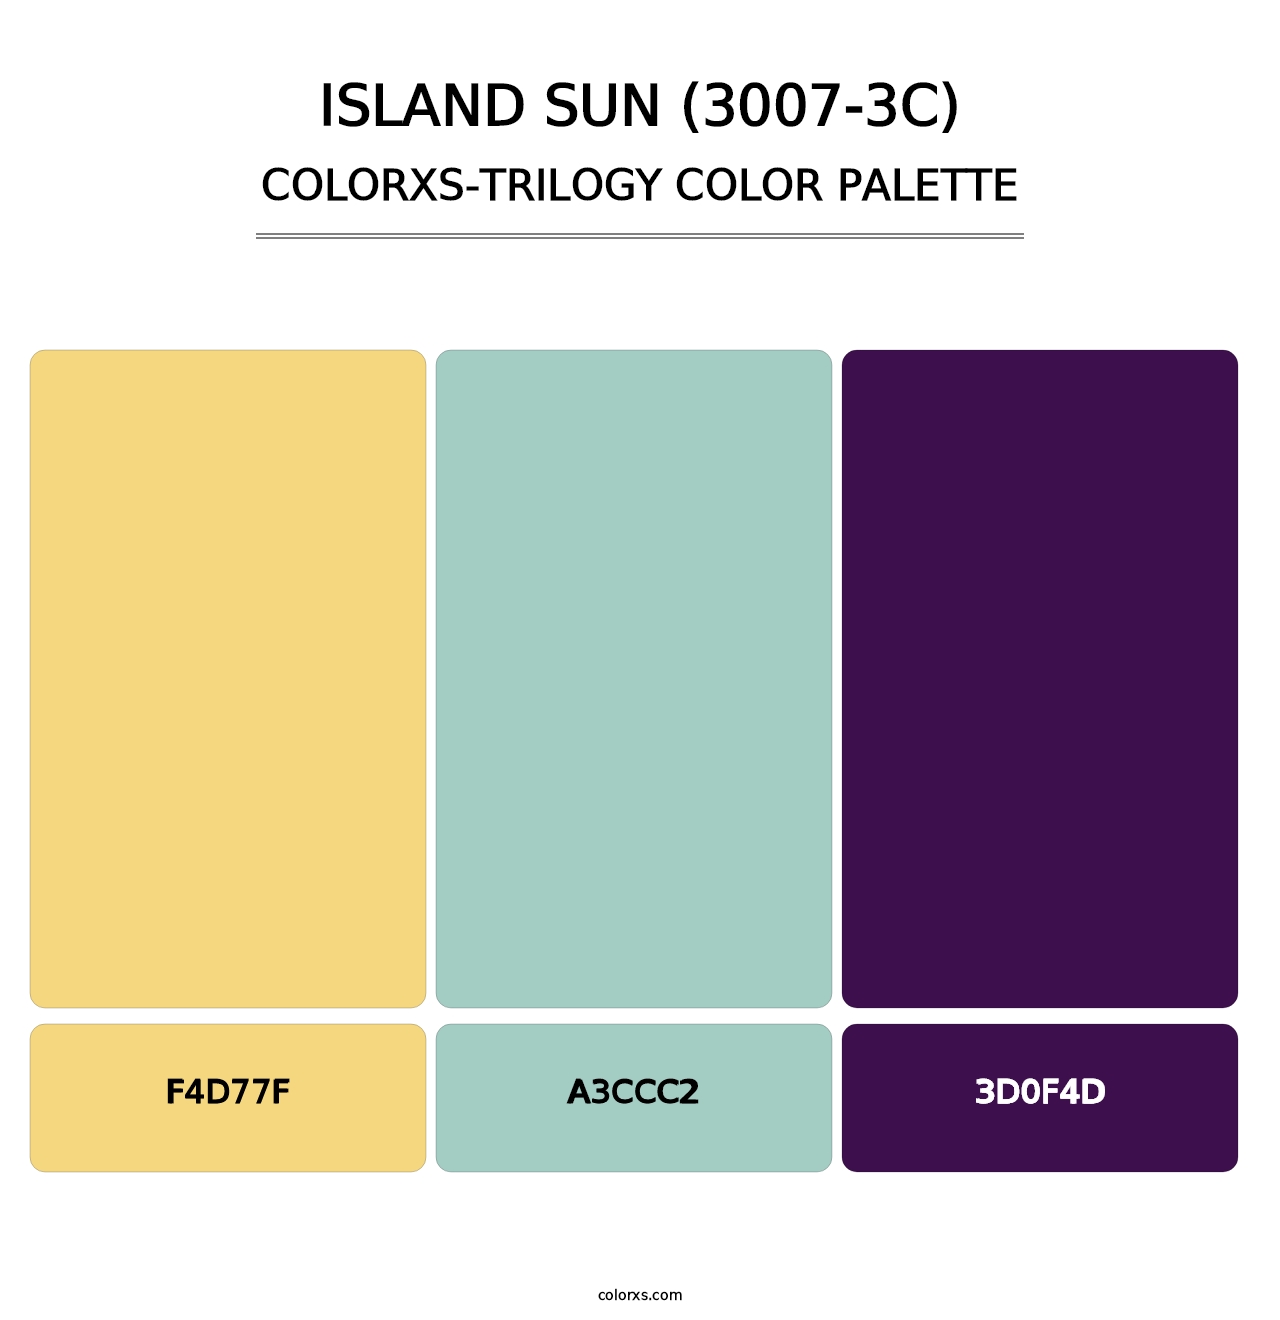 Island Sun (3007-3C) - Colorxs Trilogy Palette